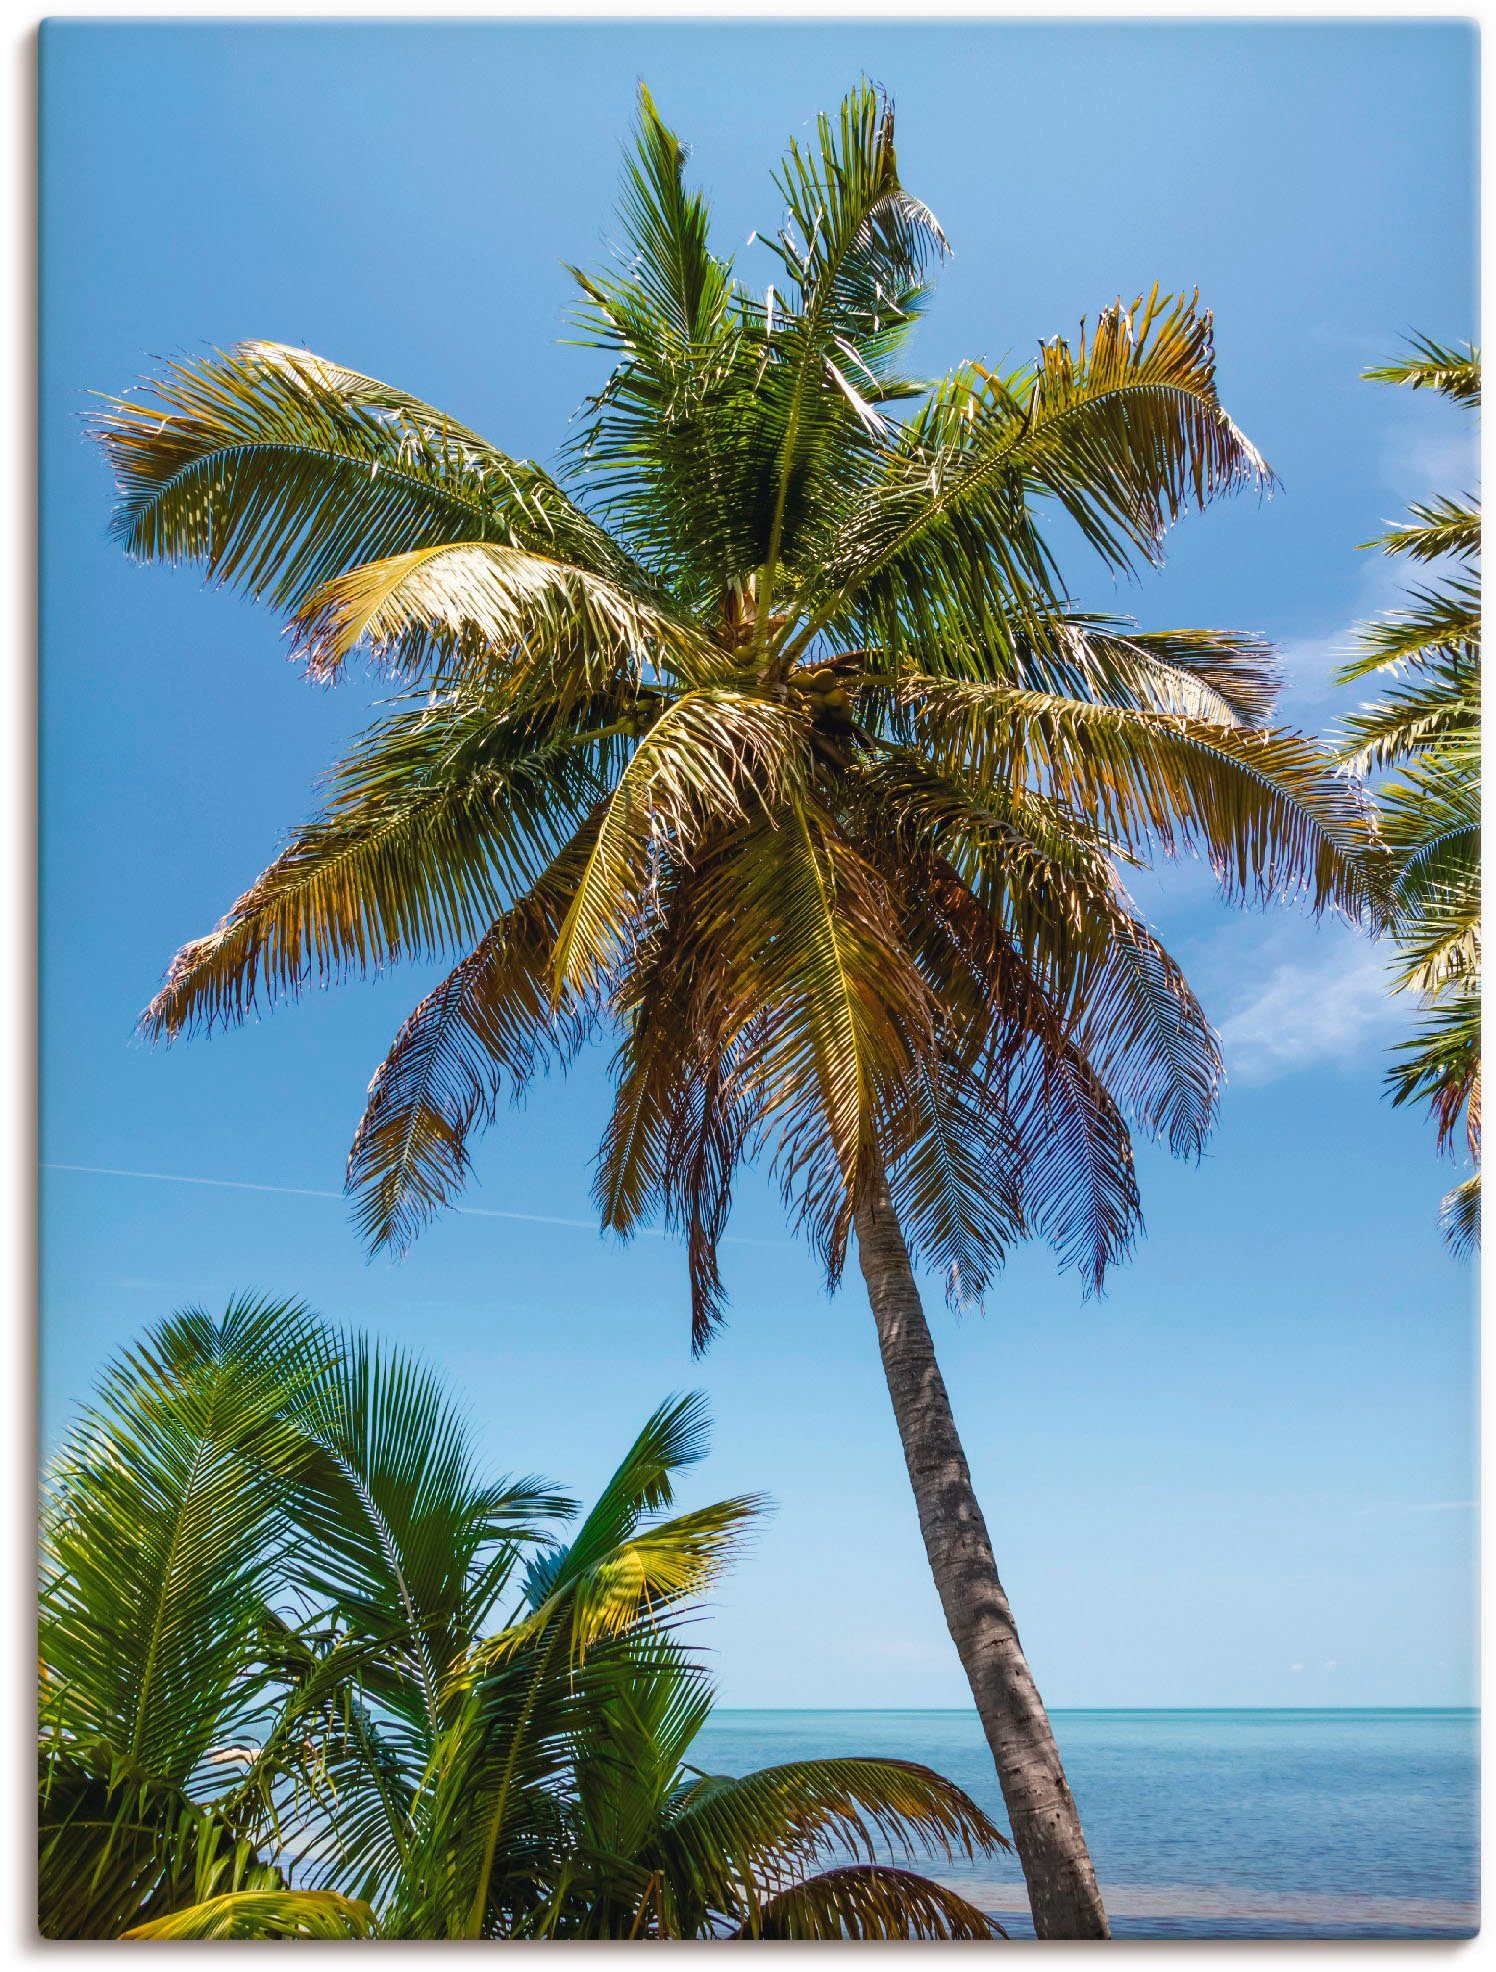 Artland Artprint Florida Keys palm & ocean in vele afmetingen & productsoorten -artprint op linnen, poster, muursticker / wandfolie ook geschikt voor de badkamer (1 stuk)